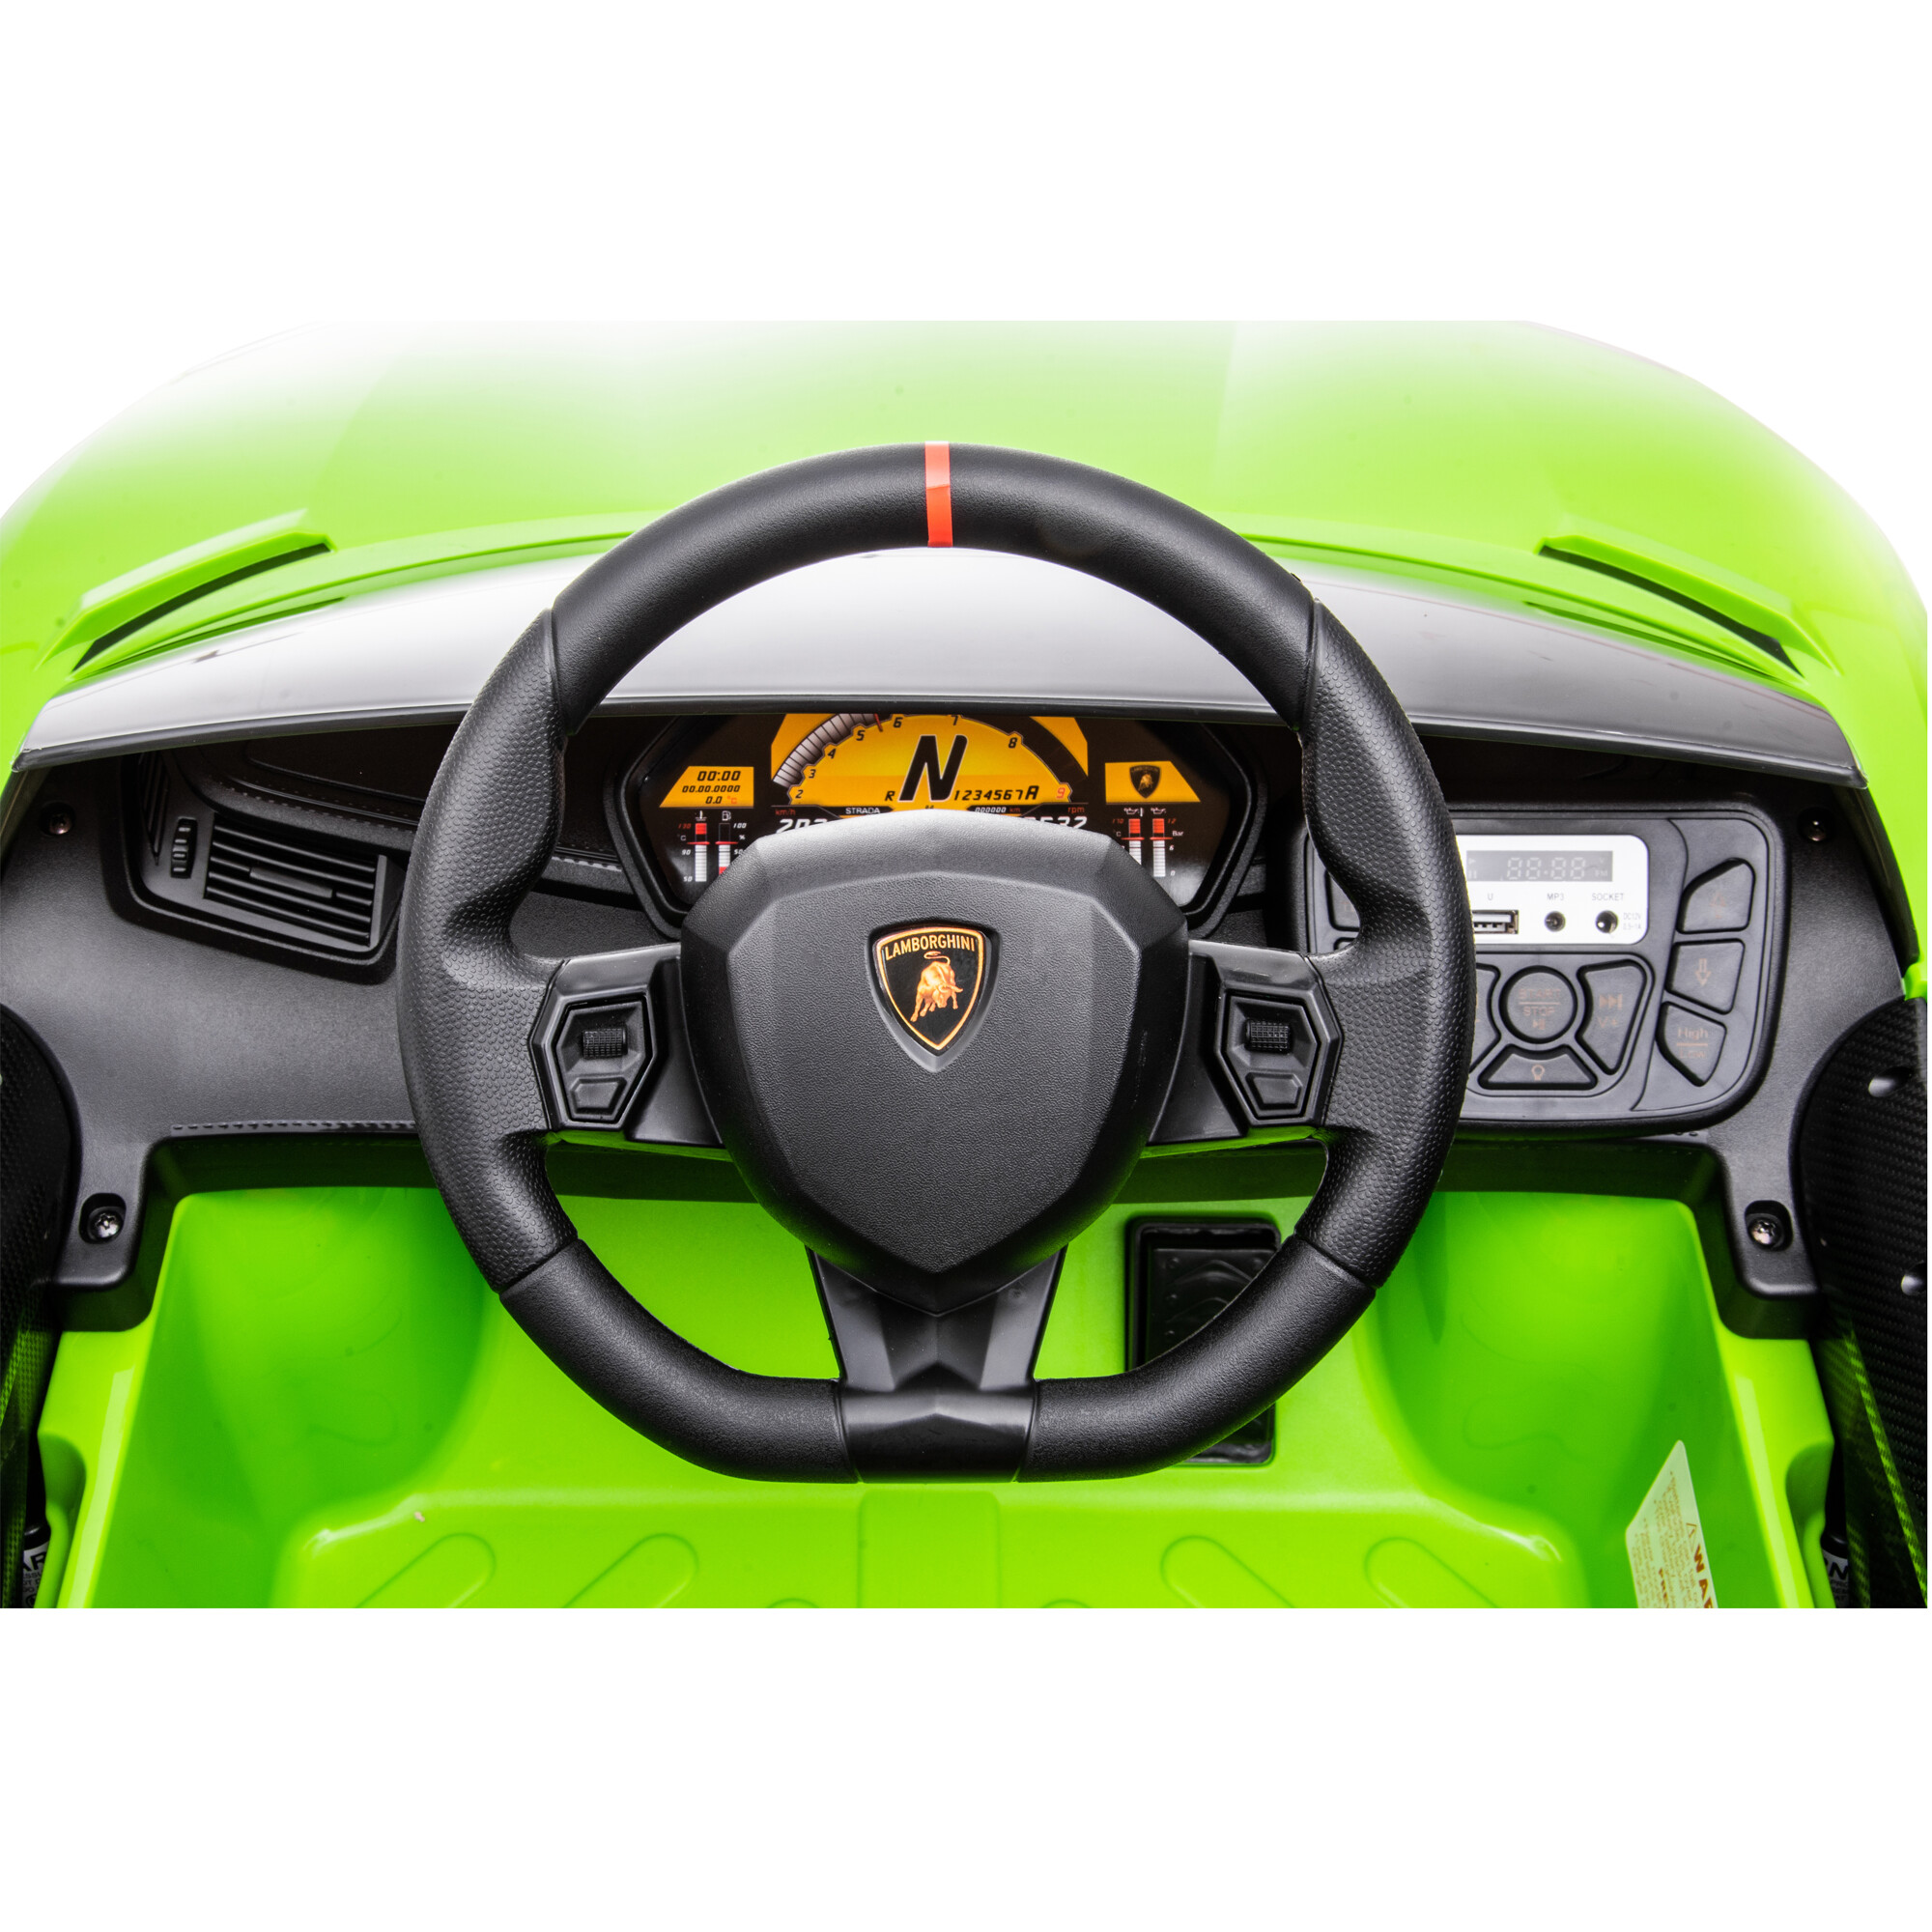 Elbil Lamborghini Aventador, 12V, limegrøn NORDIC PLAY